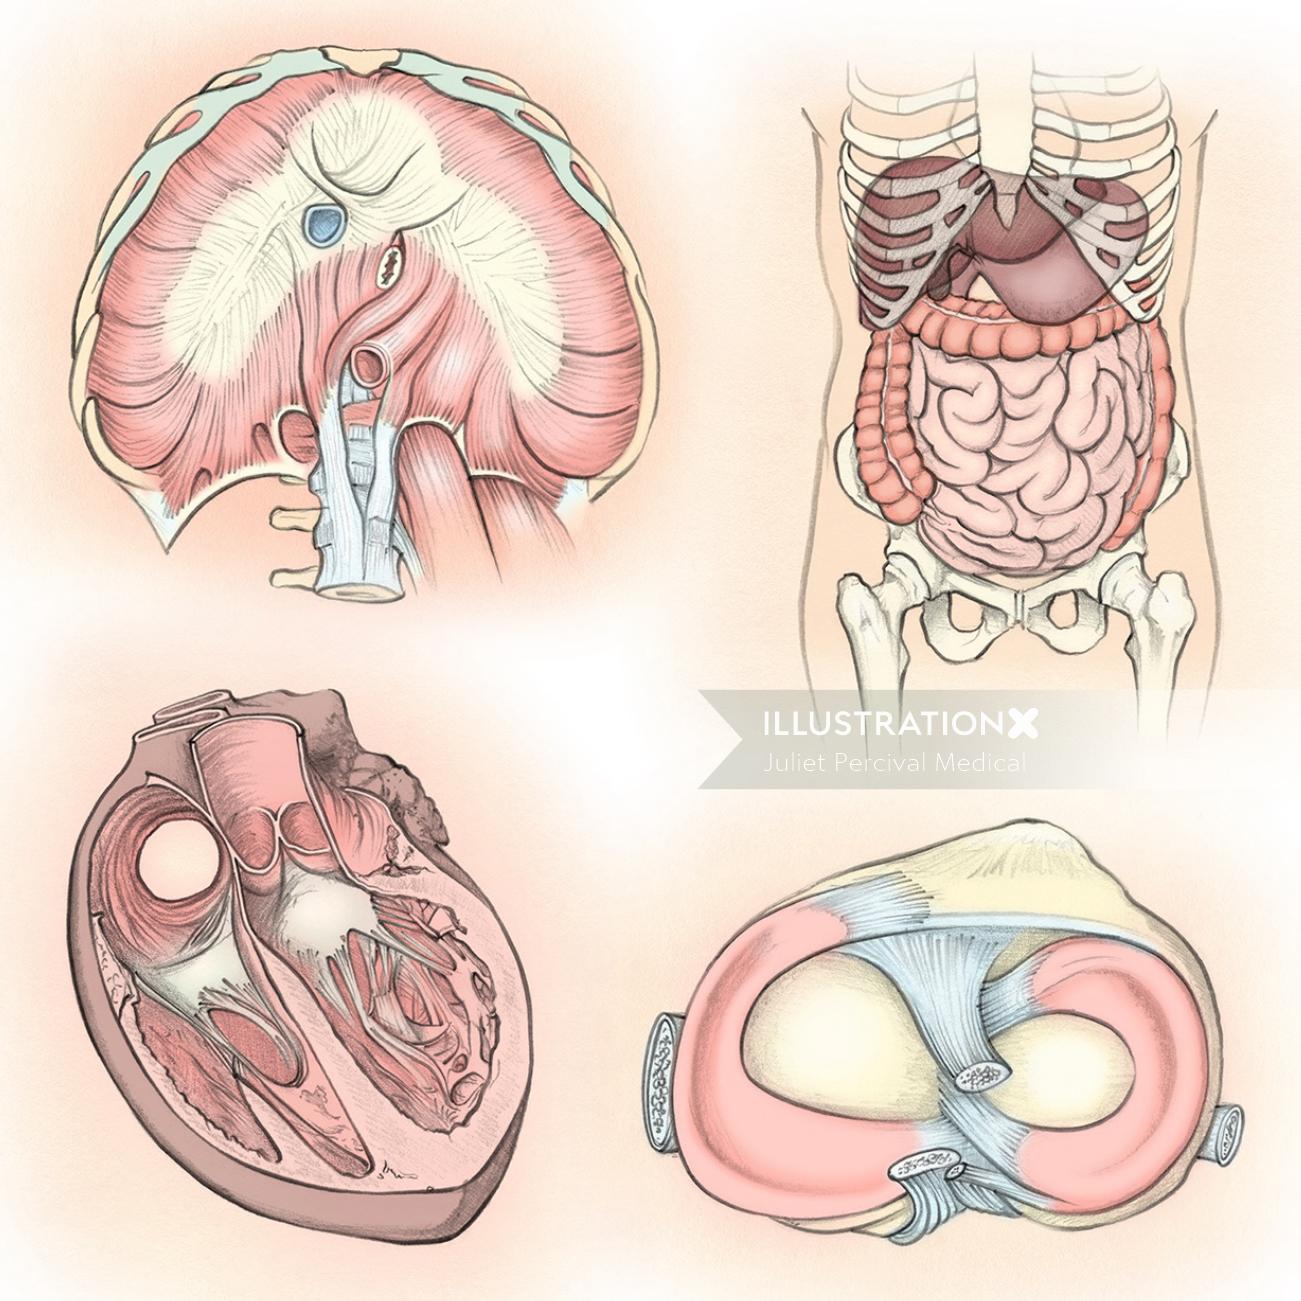 解剖学、横隔膜、消化器系、心臓、膝靭帯